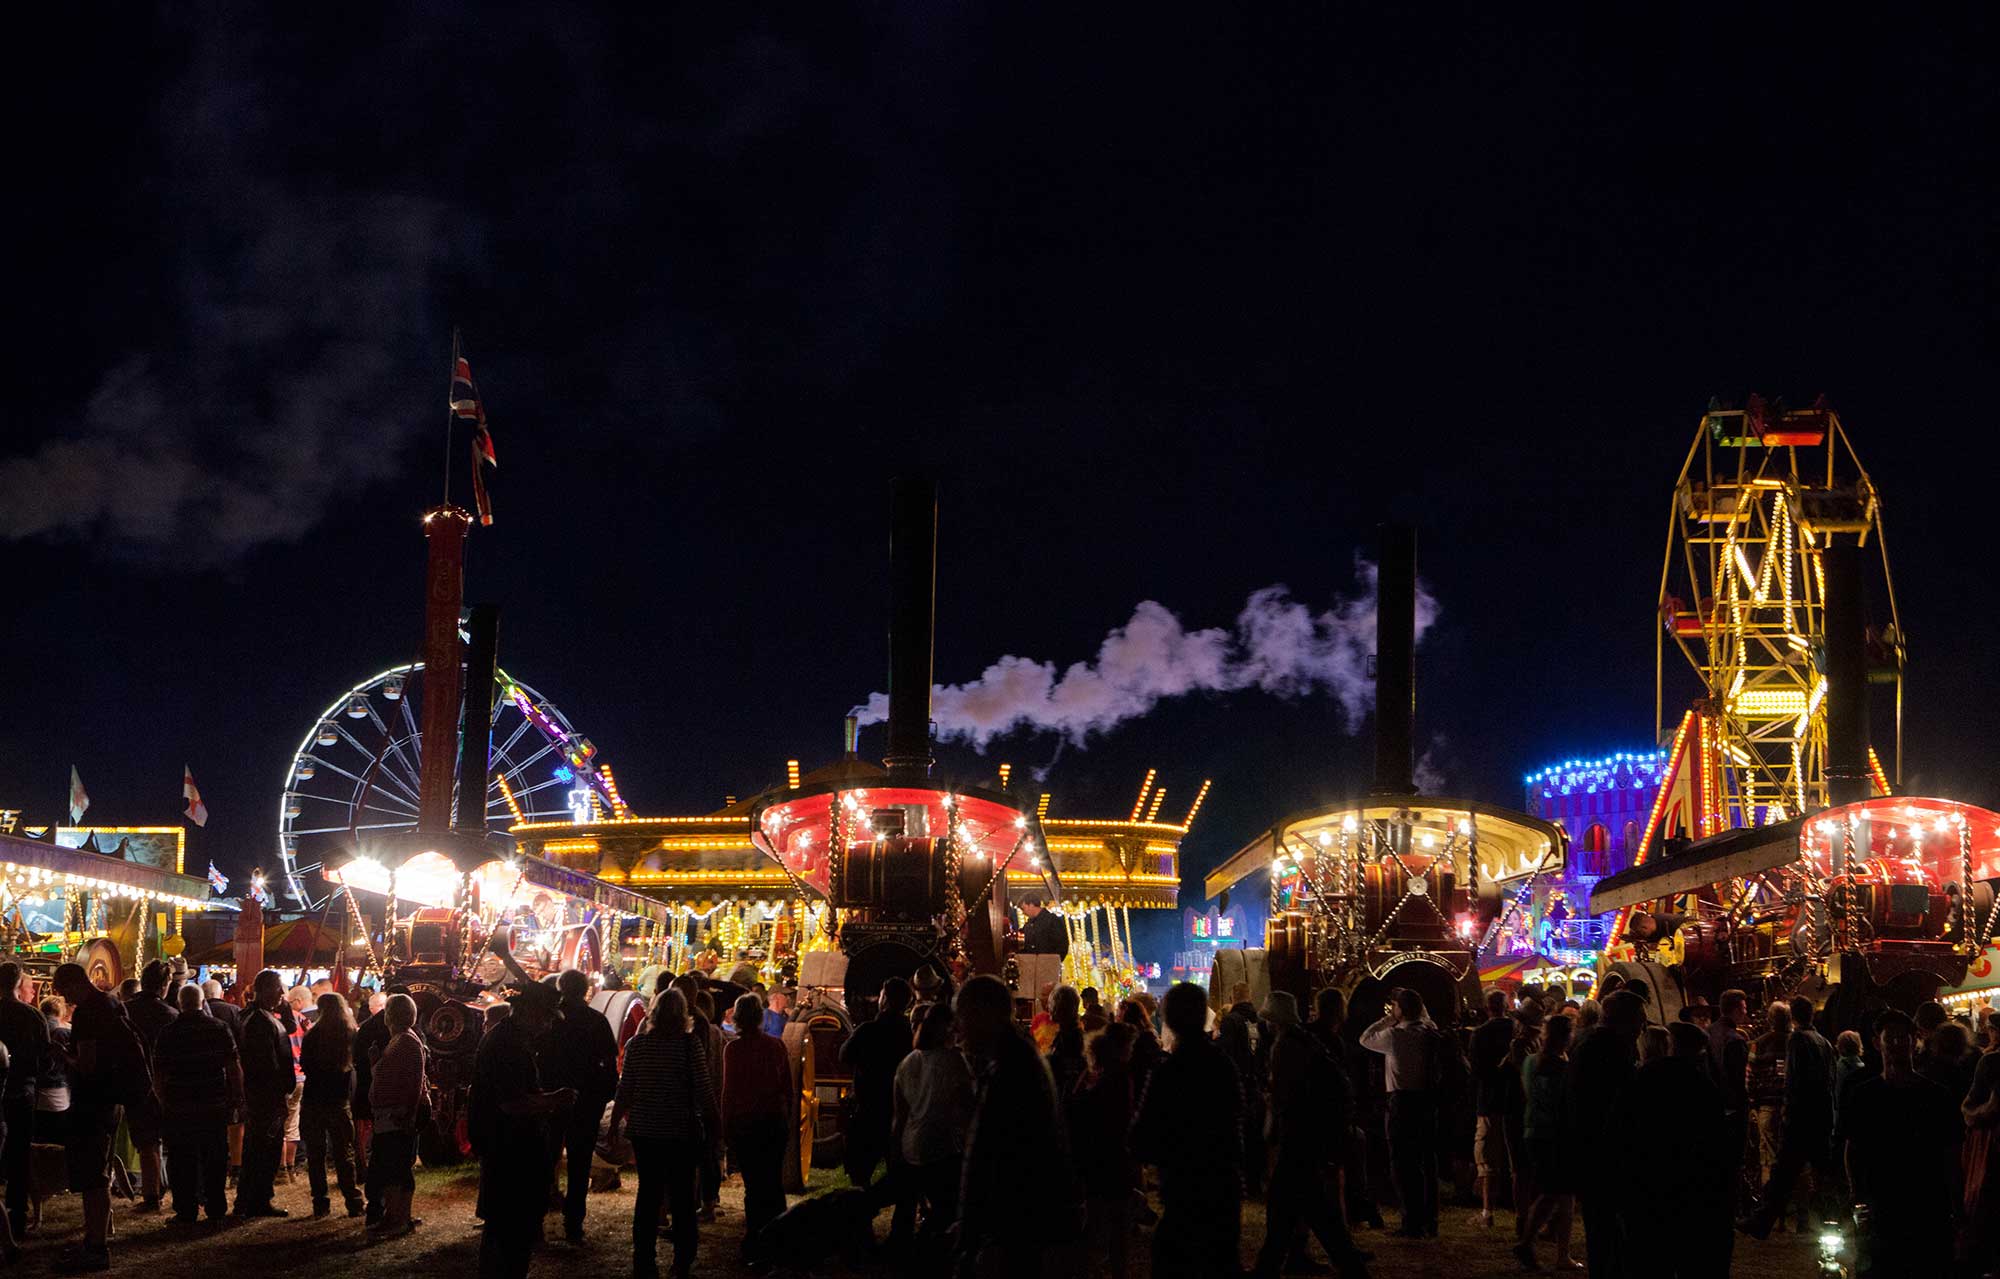 The Great Dorset Steam Fair 2019